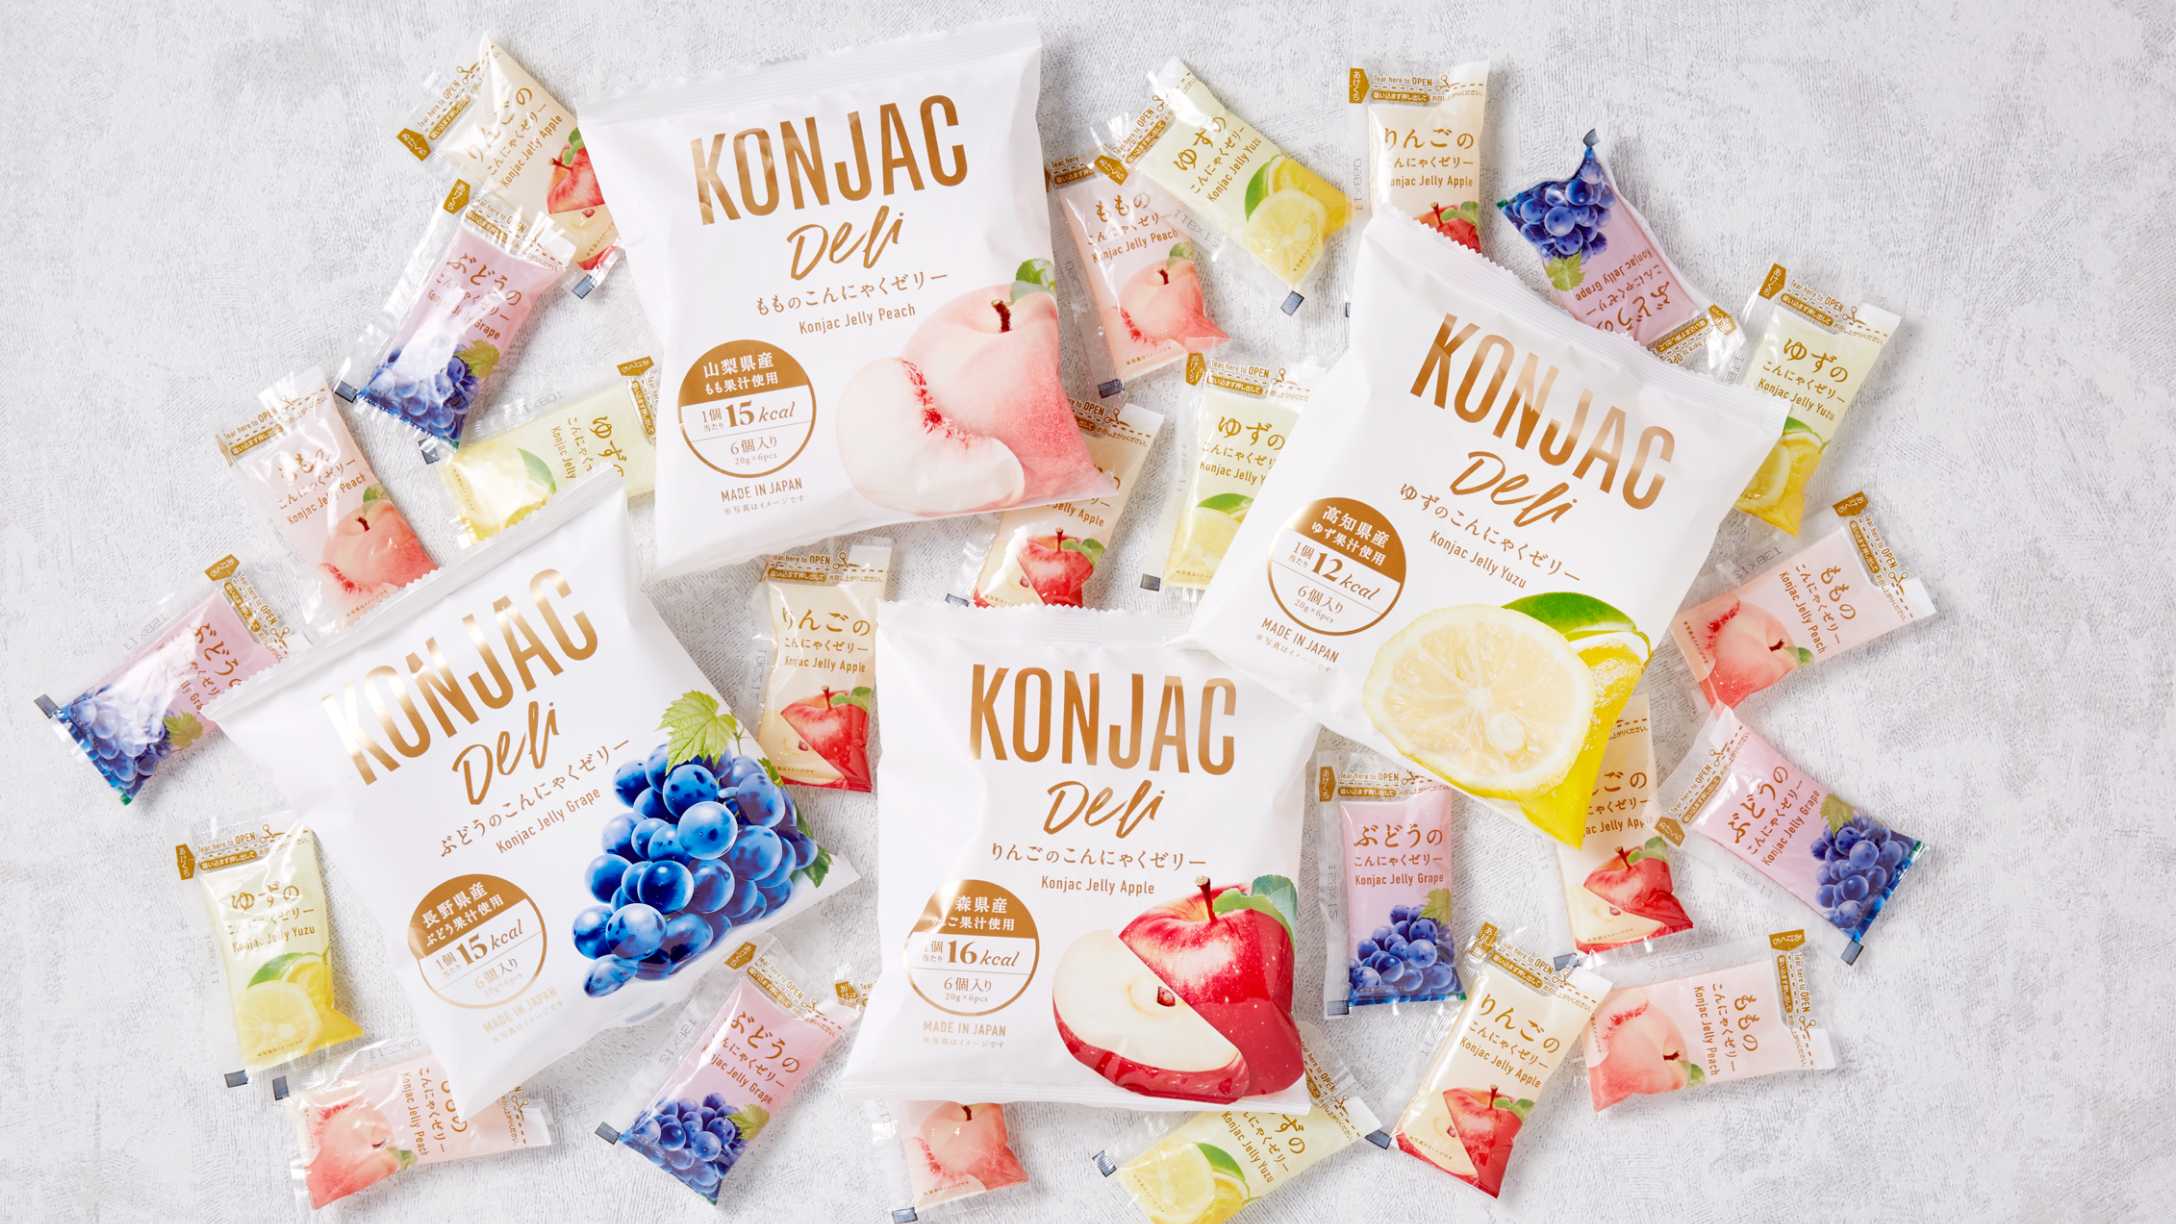 Konjac Deli KONJAC Jelly products